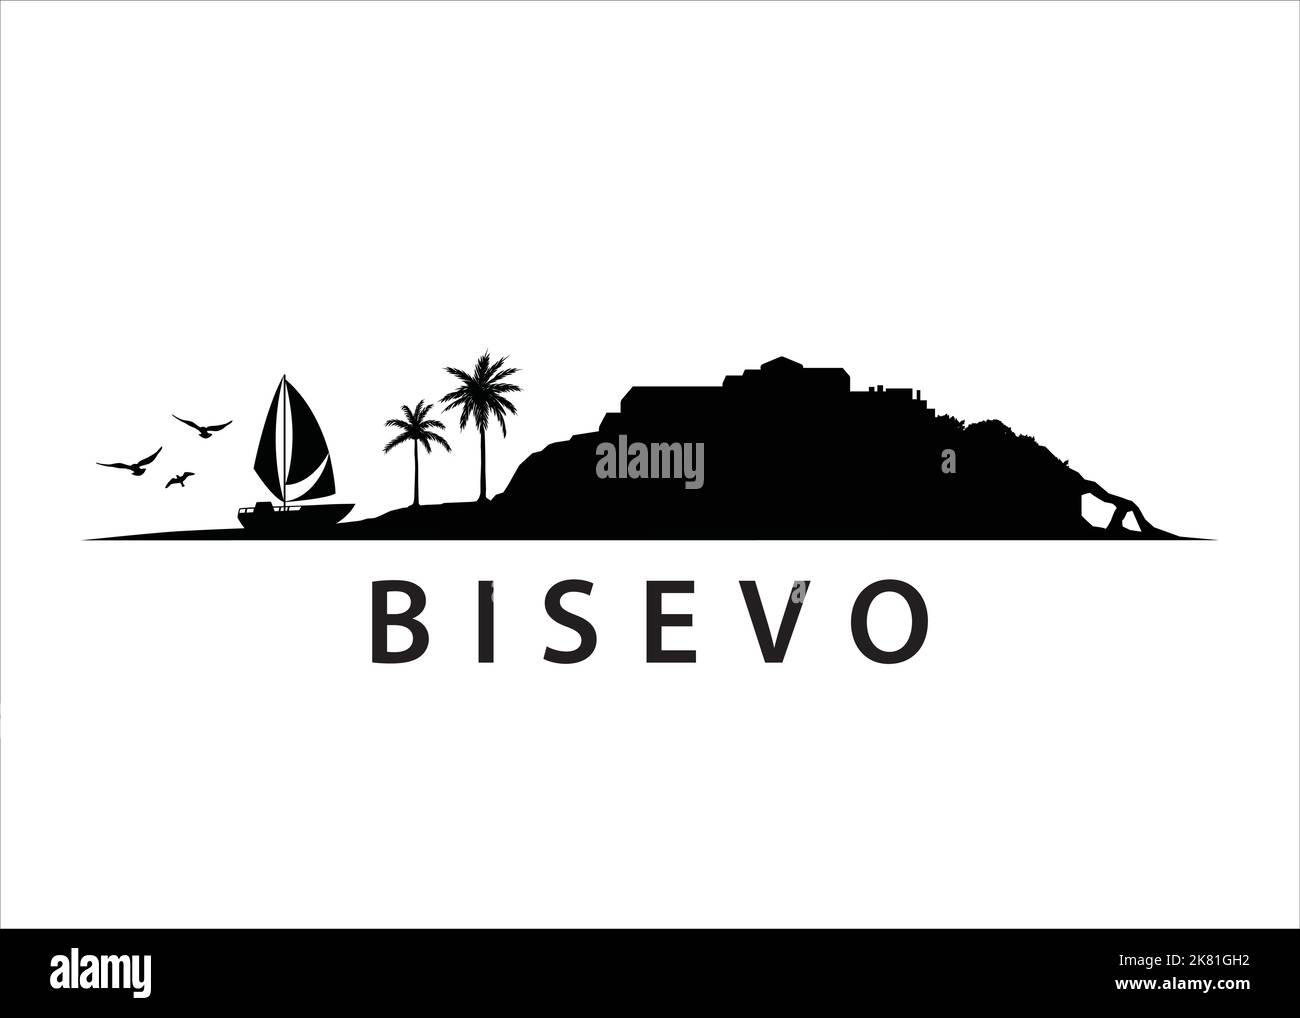 Bisevo Croatian island Landscape Vector Graphic Stock Vector